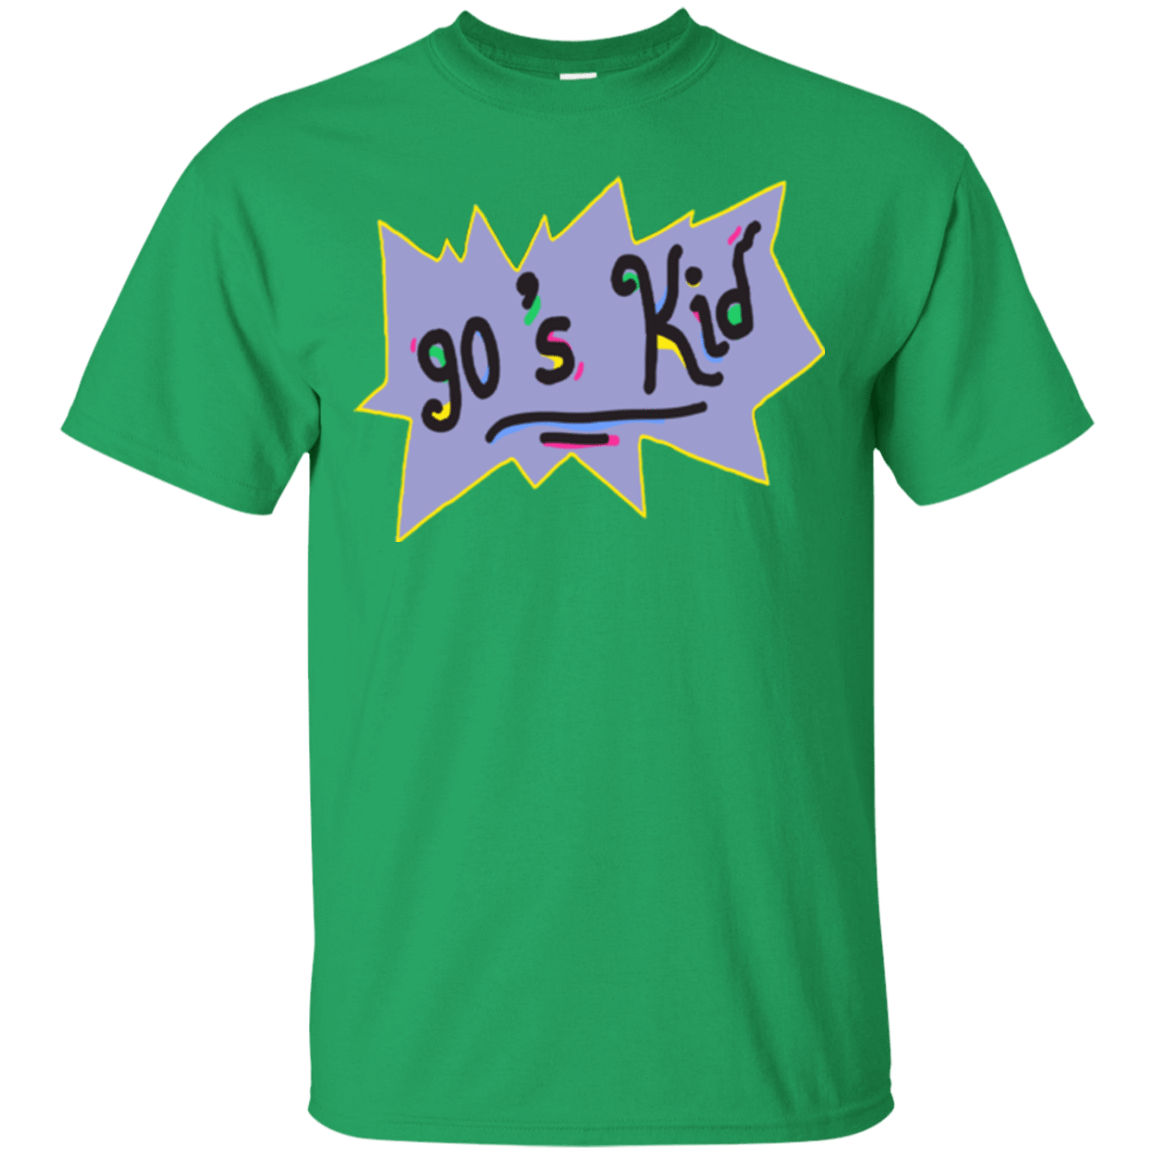 T-Shirts Irish Green / Small 90's Kid T-Shirt